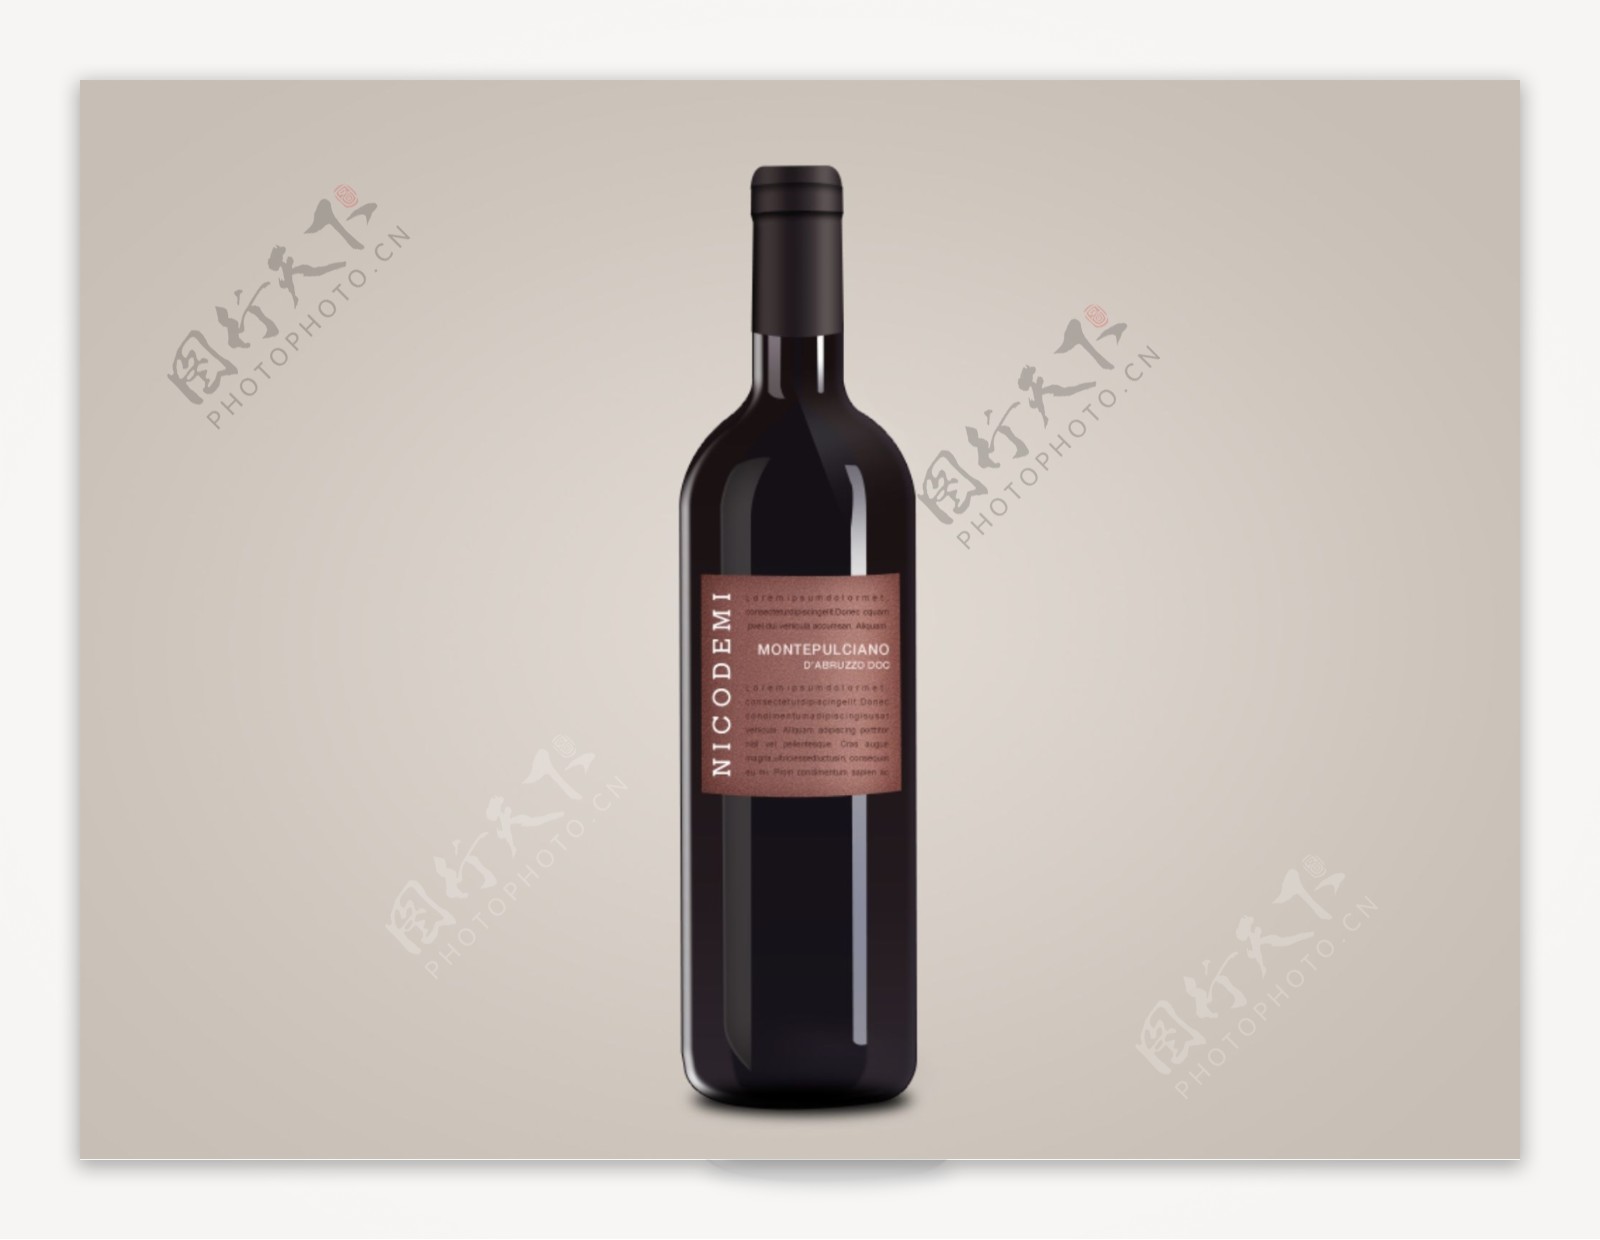 红酒葡萄酒图标